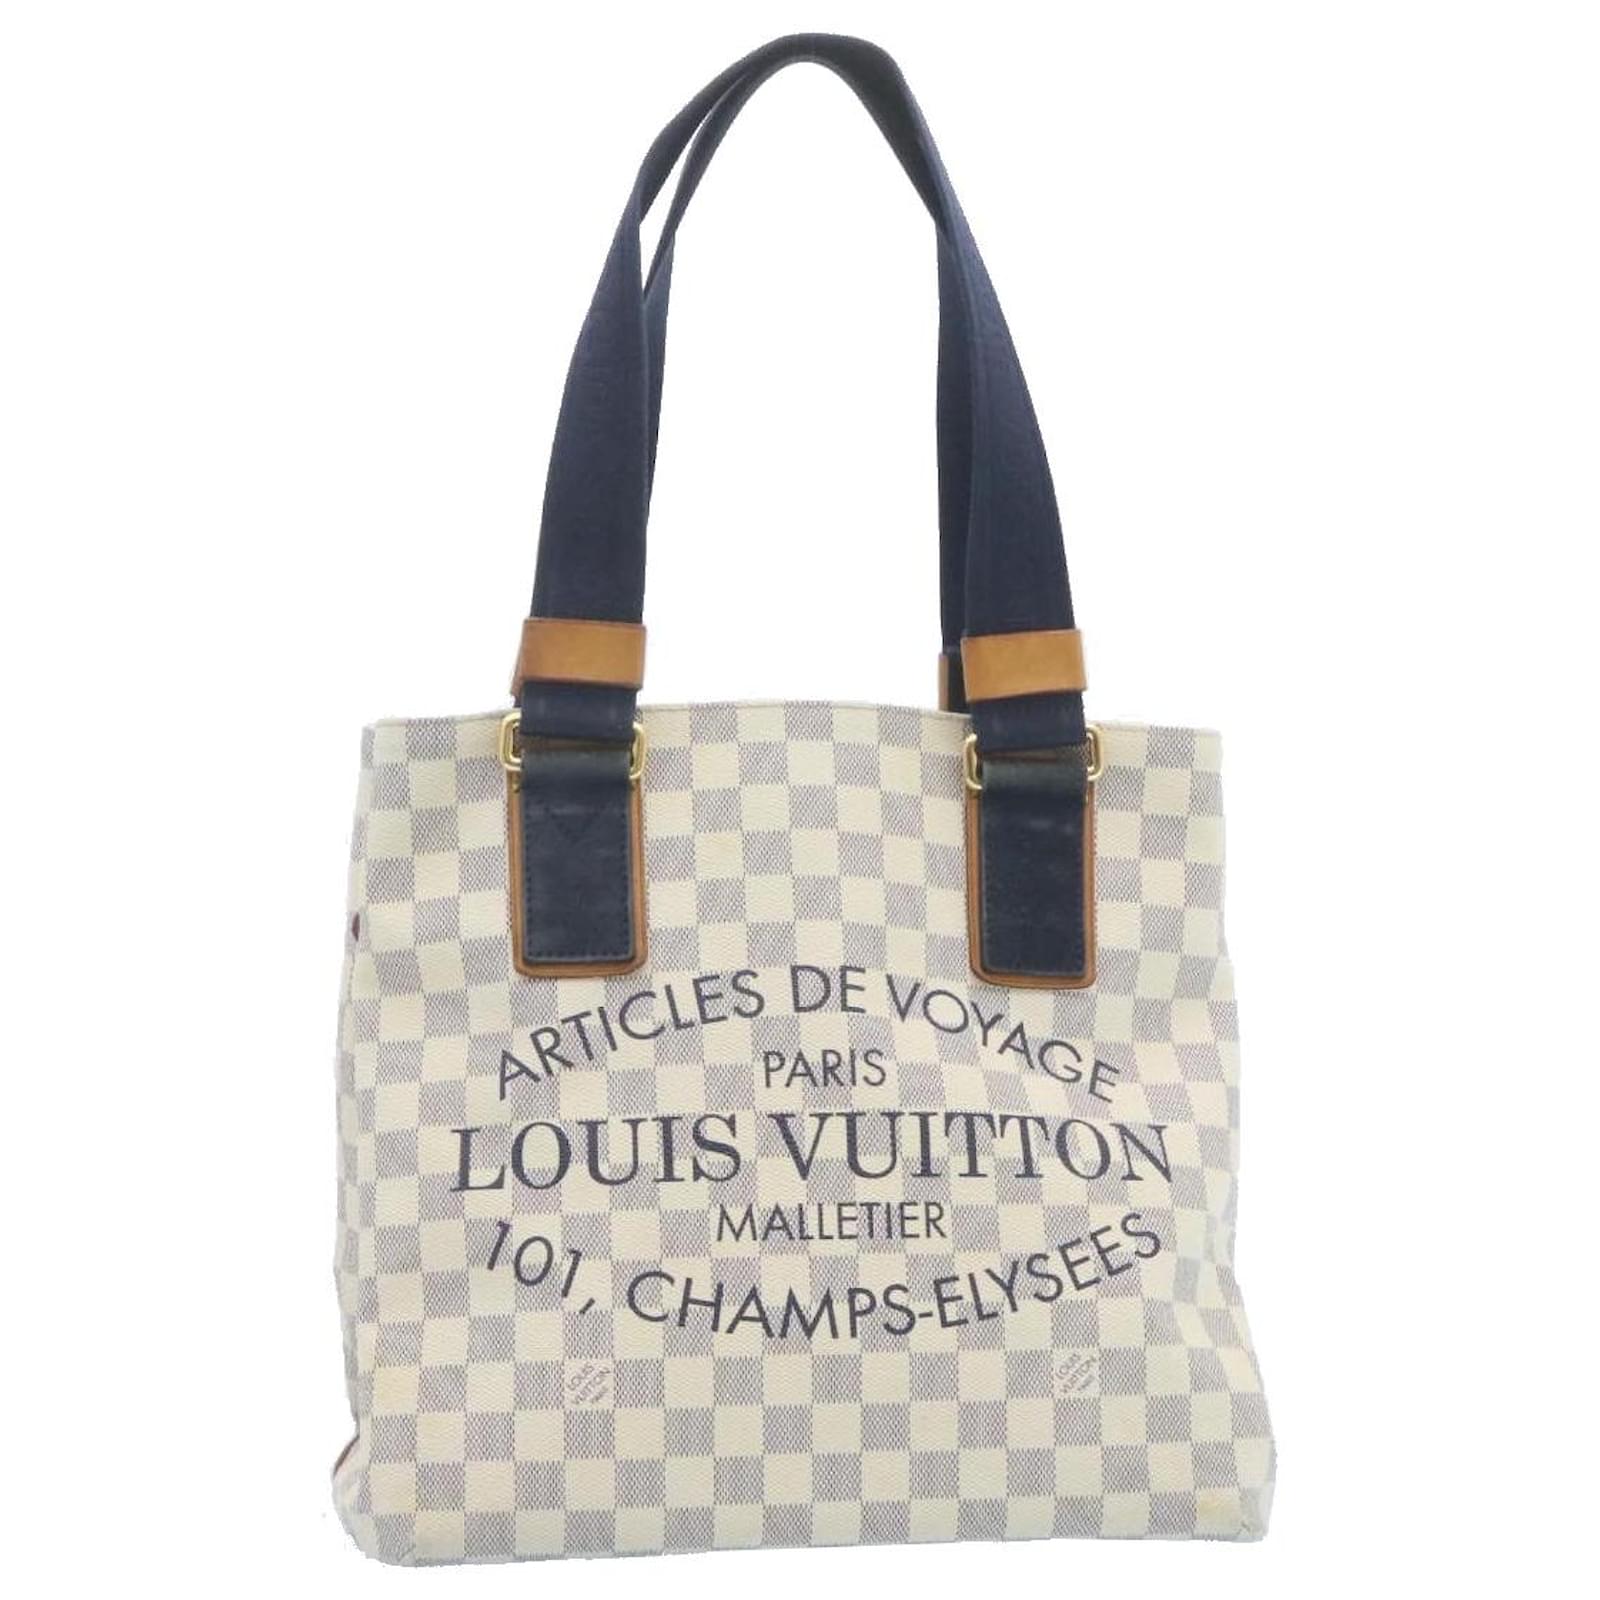 Louis Vuitton 'Articles de Voyage' Canvas Bag